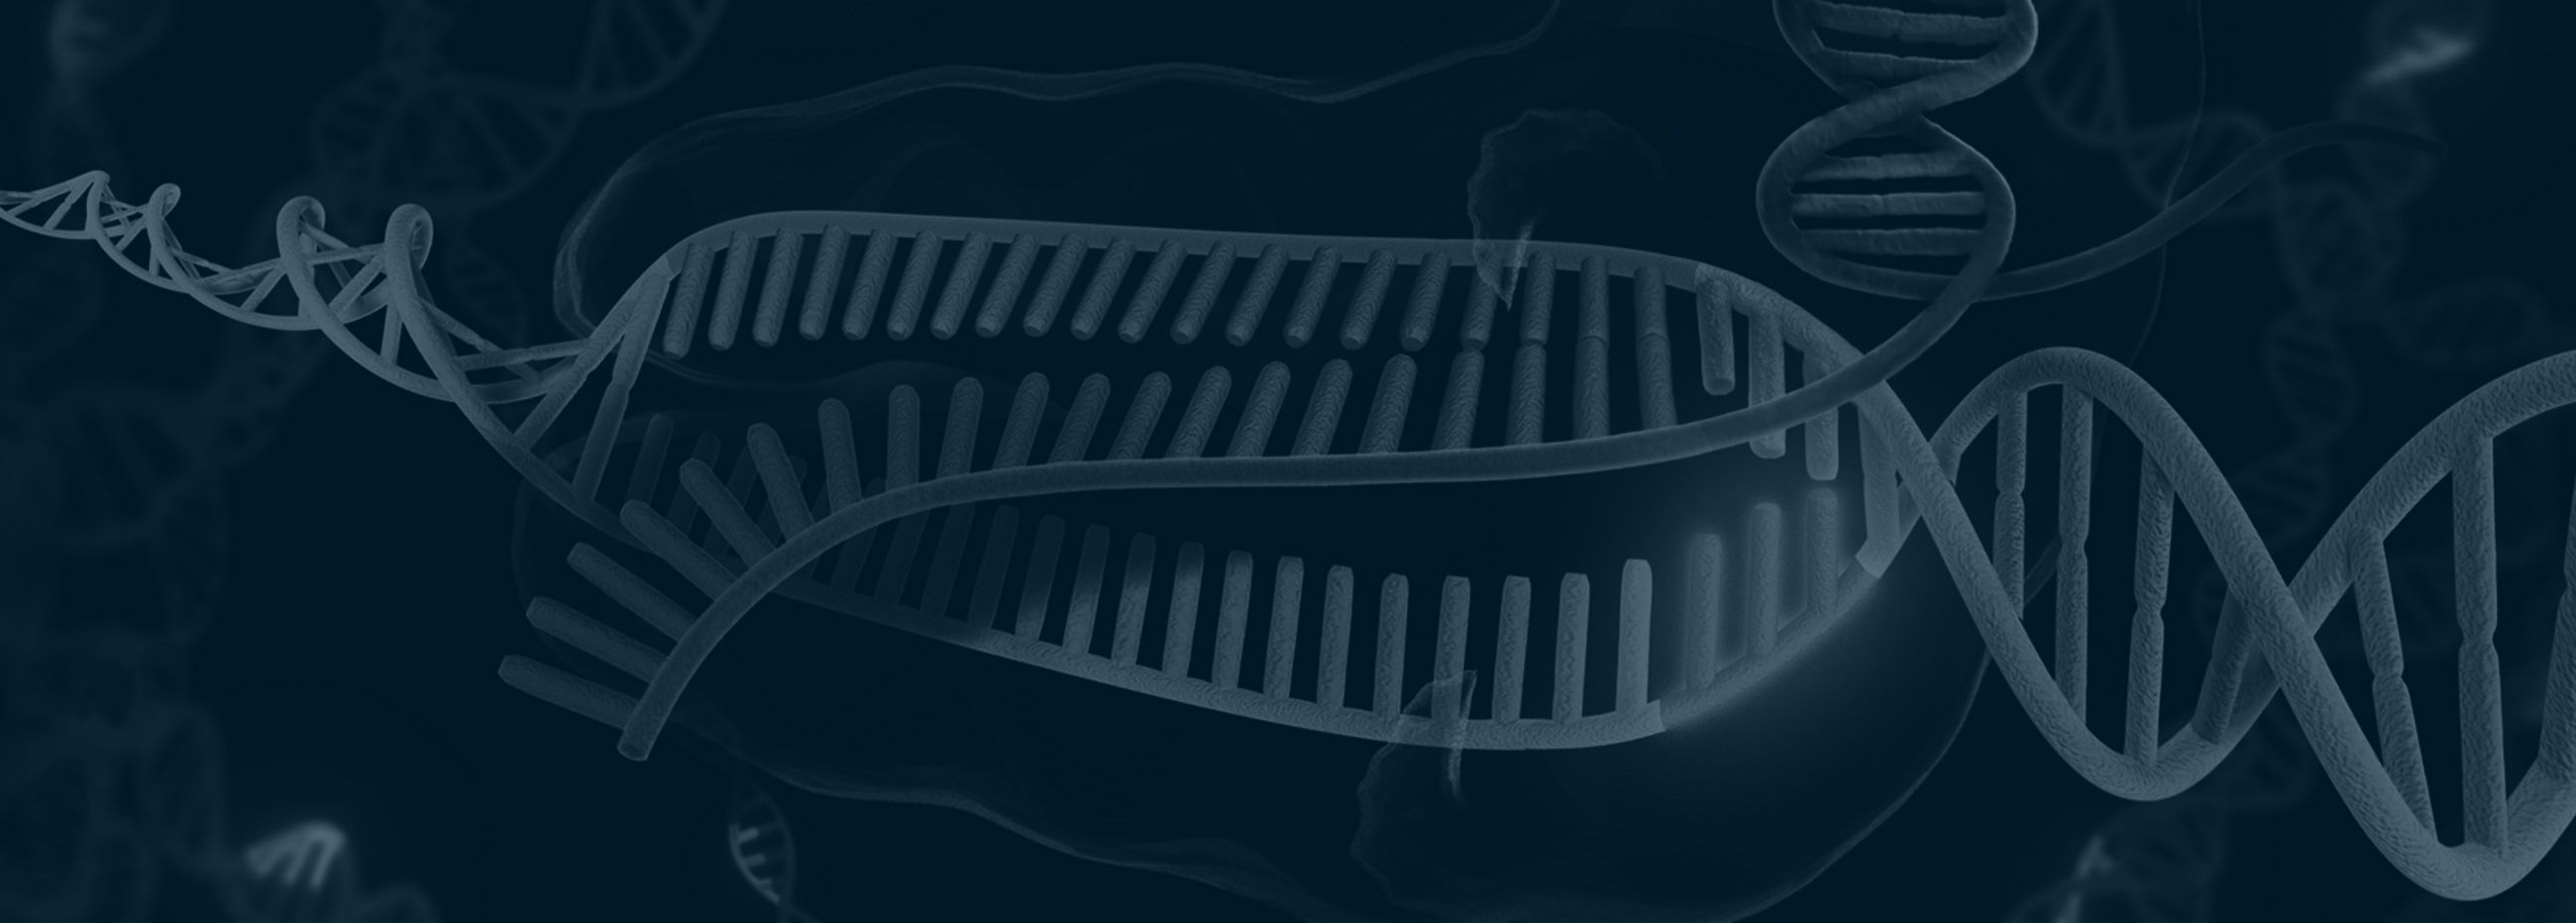 CRISPR-Cas9 与 RNA 和 DNA 结合的卡通形象